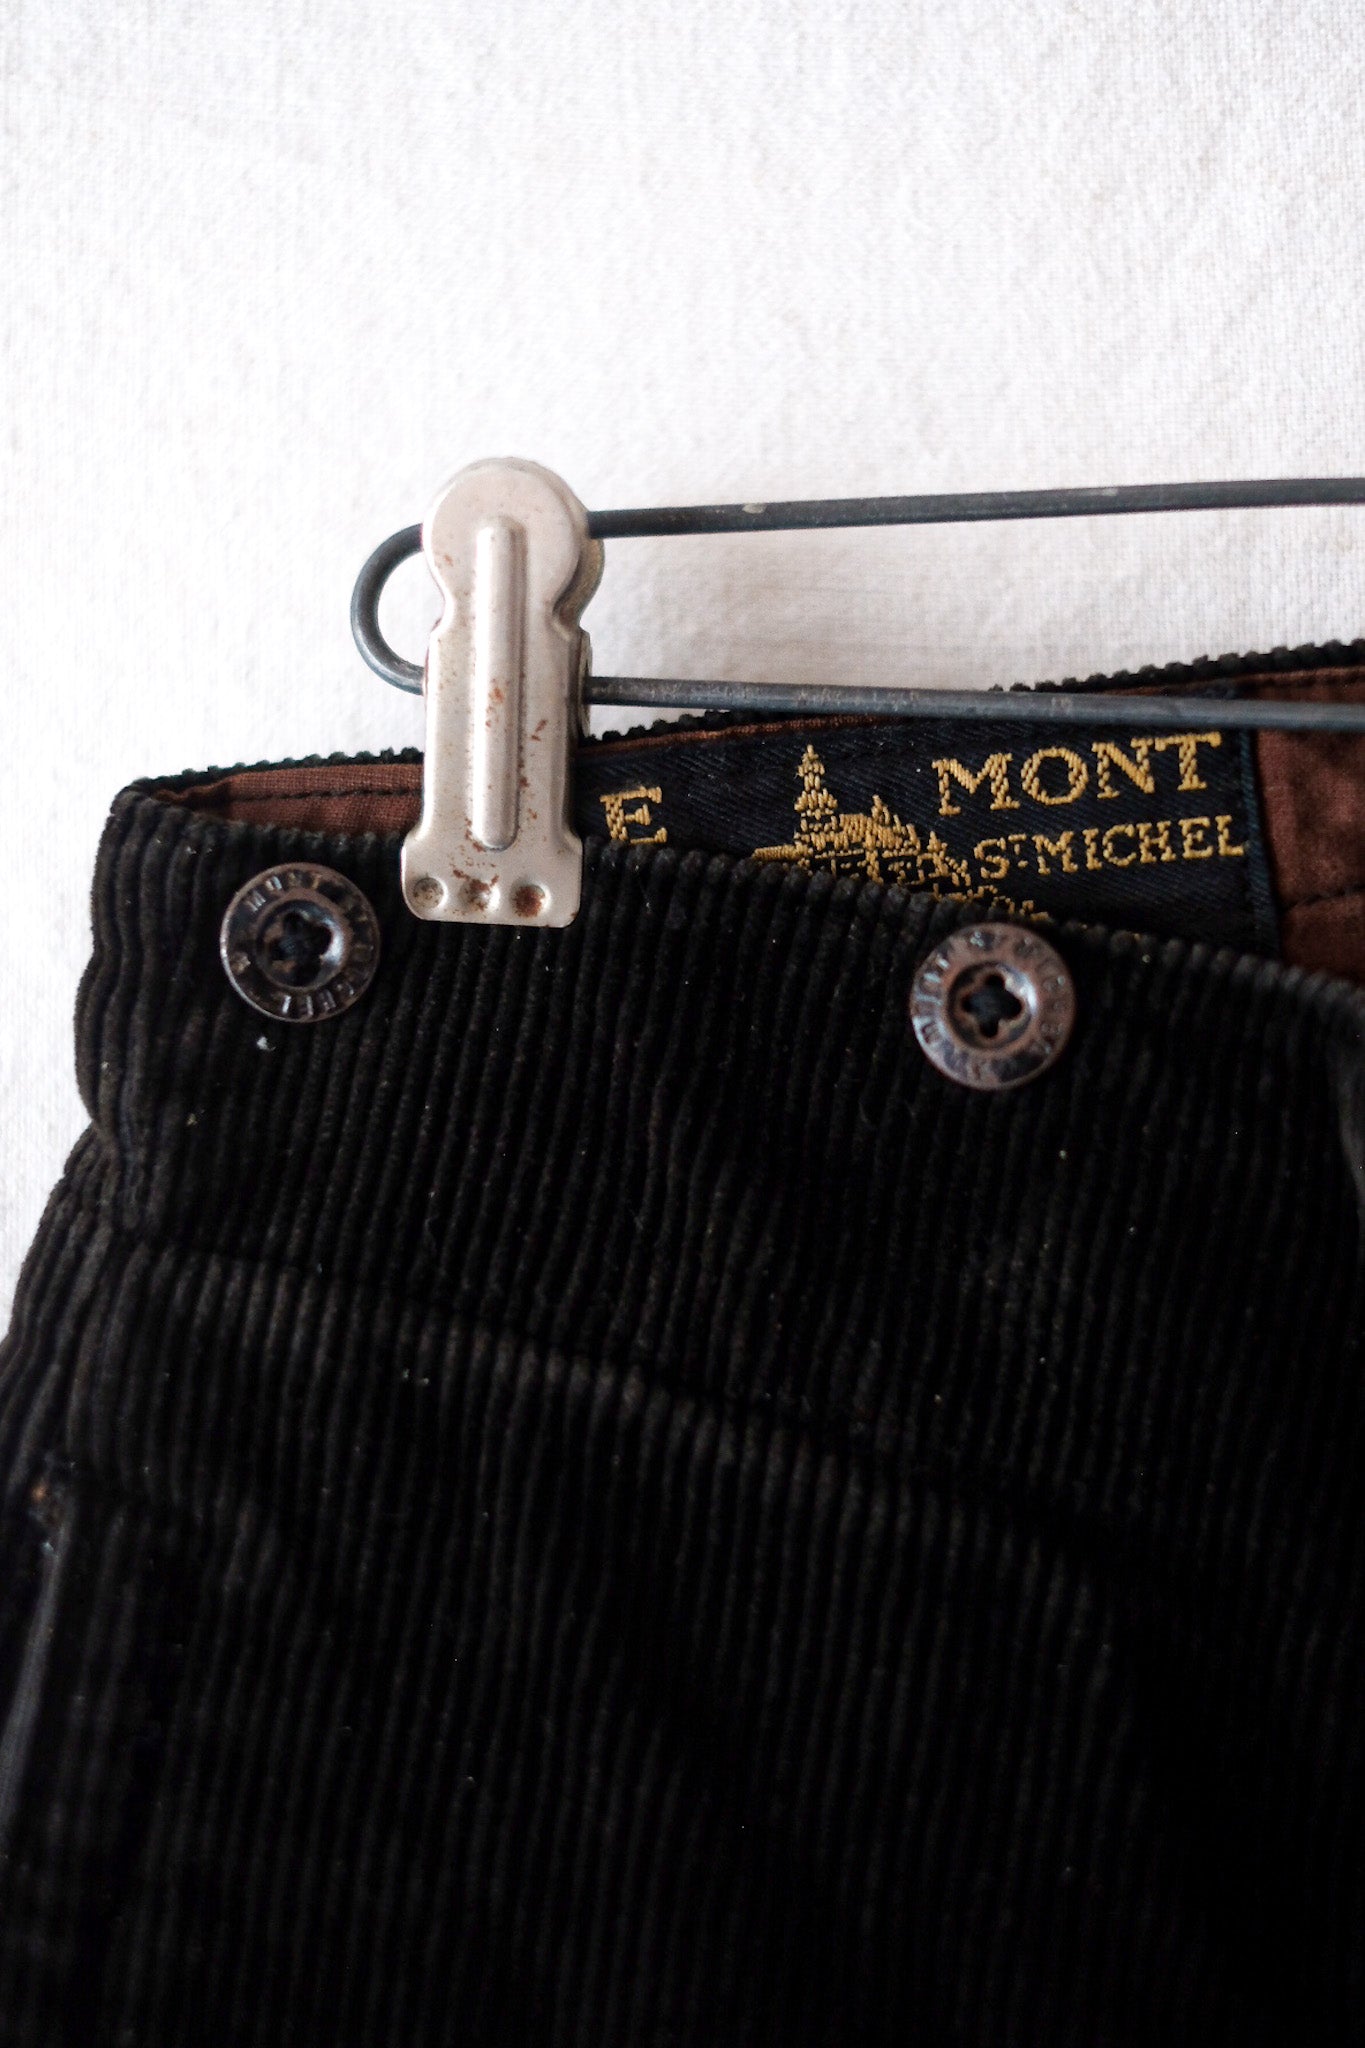 [~ 40's] French Vintage "LE MONT ST. MICHEL" BLACK CORDUROY WORK SHORTS